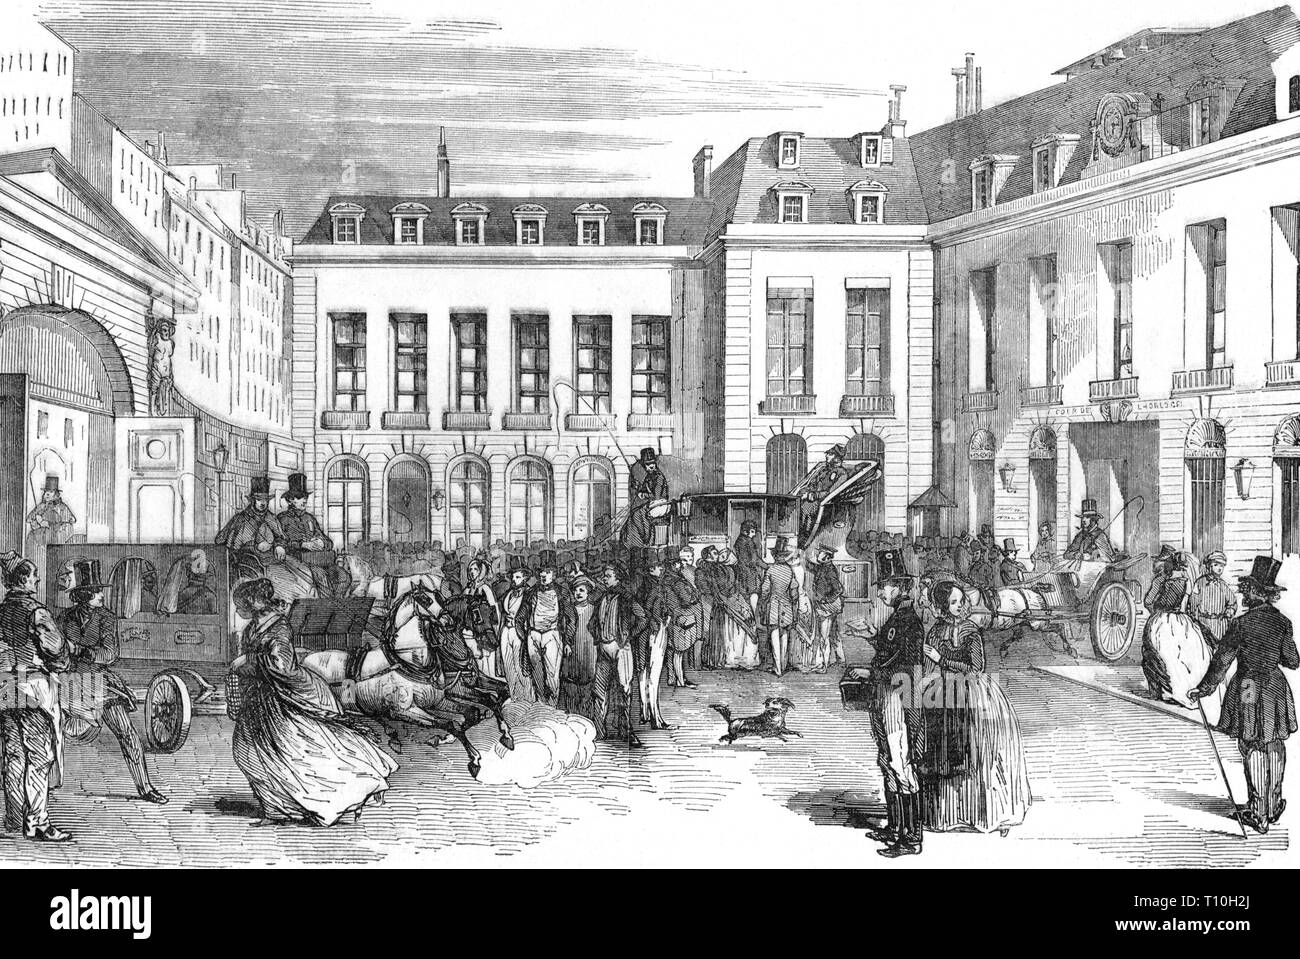 La poste, bureau de poste, bureau général des postes à Paris, cour intérieure, gravure sur bois, 1852, l'artiste n'a pas d'auteur pour être effacé Banque D'Images